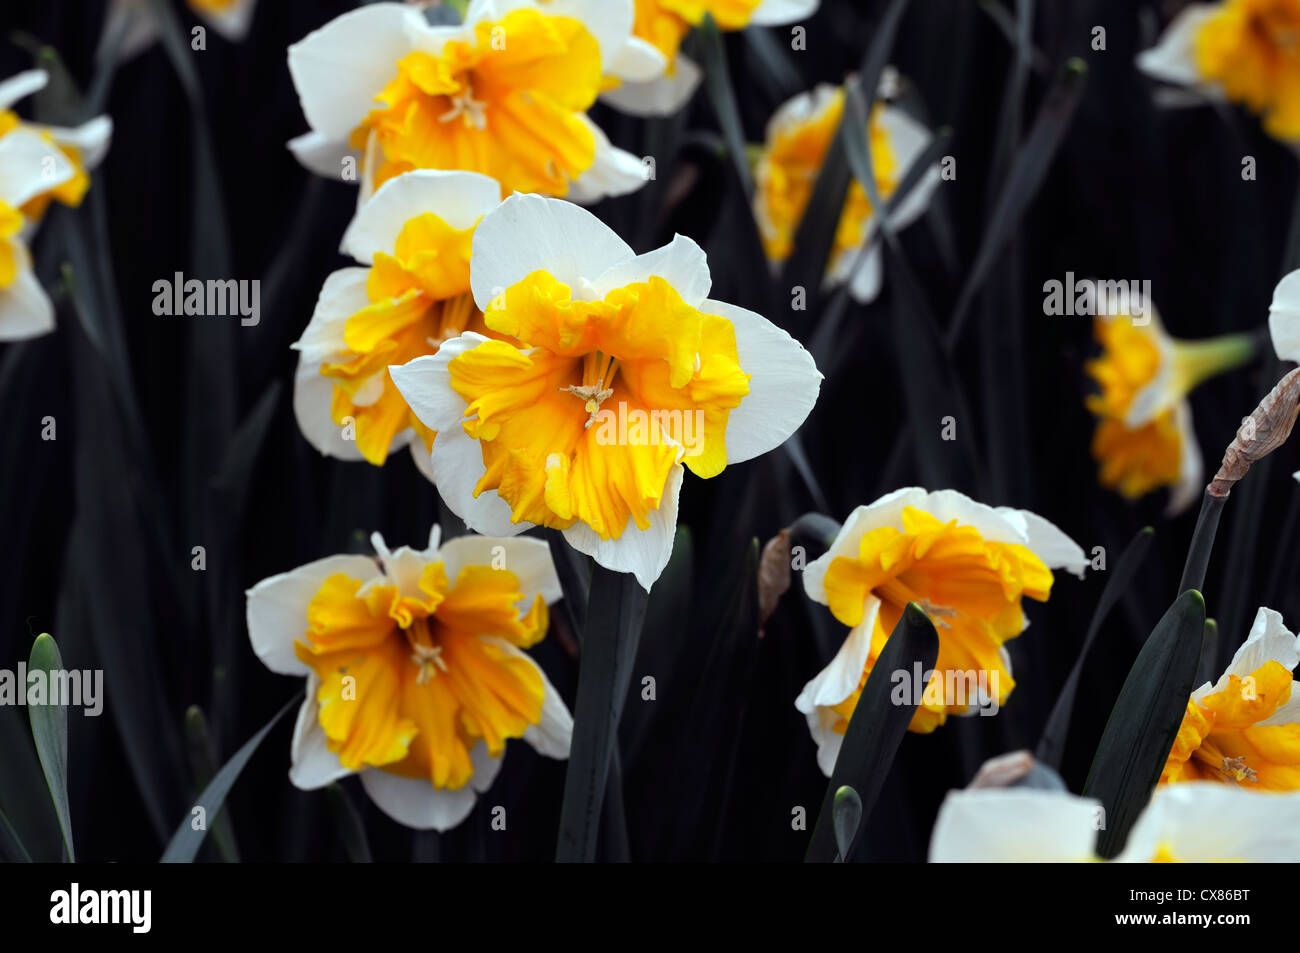 Narcissus aranciera split corona a tazza giallo arancio bianco ritratti vegetali petali di fiori narcisi narcisi bulbi molla Foto Stock